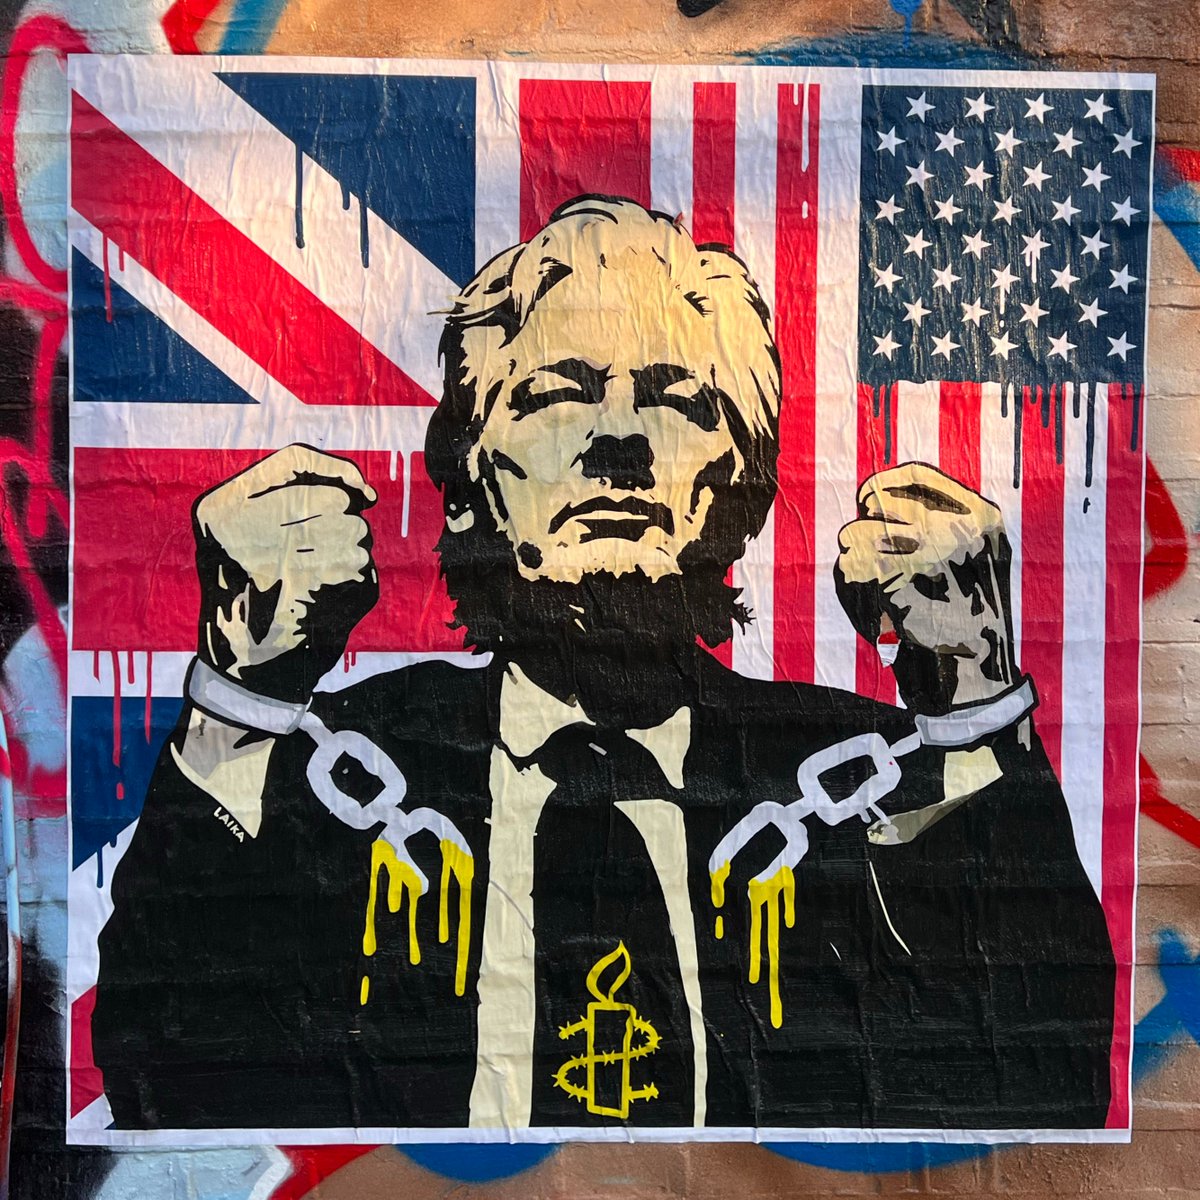 Inizia oggi l’udienza in cui si deciderà se Julian Assange avrà a disposizione altre opportunità di opporsi alla richiesta di estradizione negli Usa. Se estradato, rischia 175 anni di carcere. #FreeAssange 🖌️ 'Melt the Chains' - Laika | 20 maggio 2024 - Londra